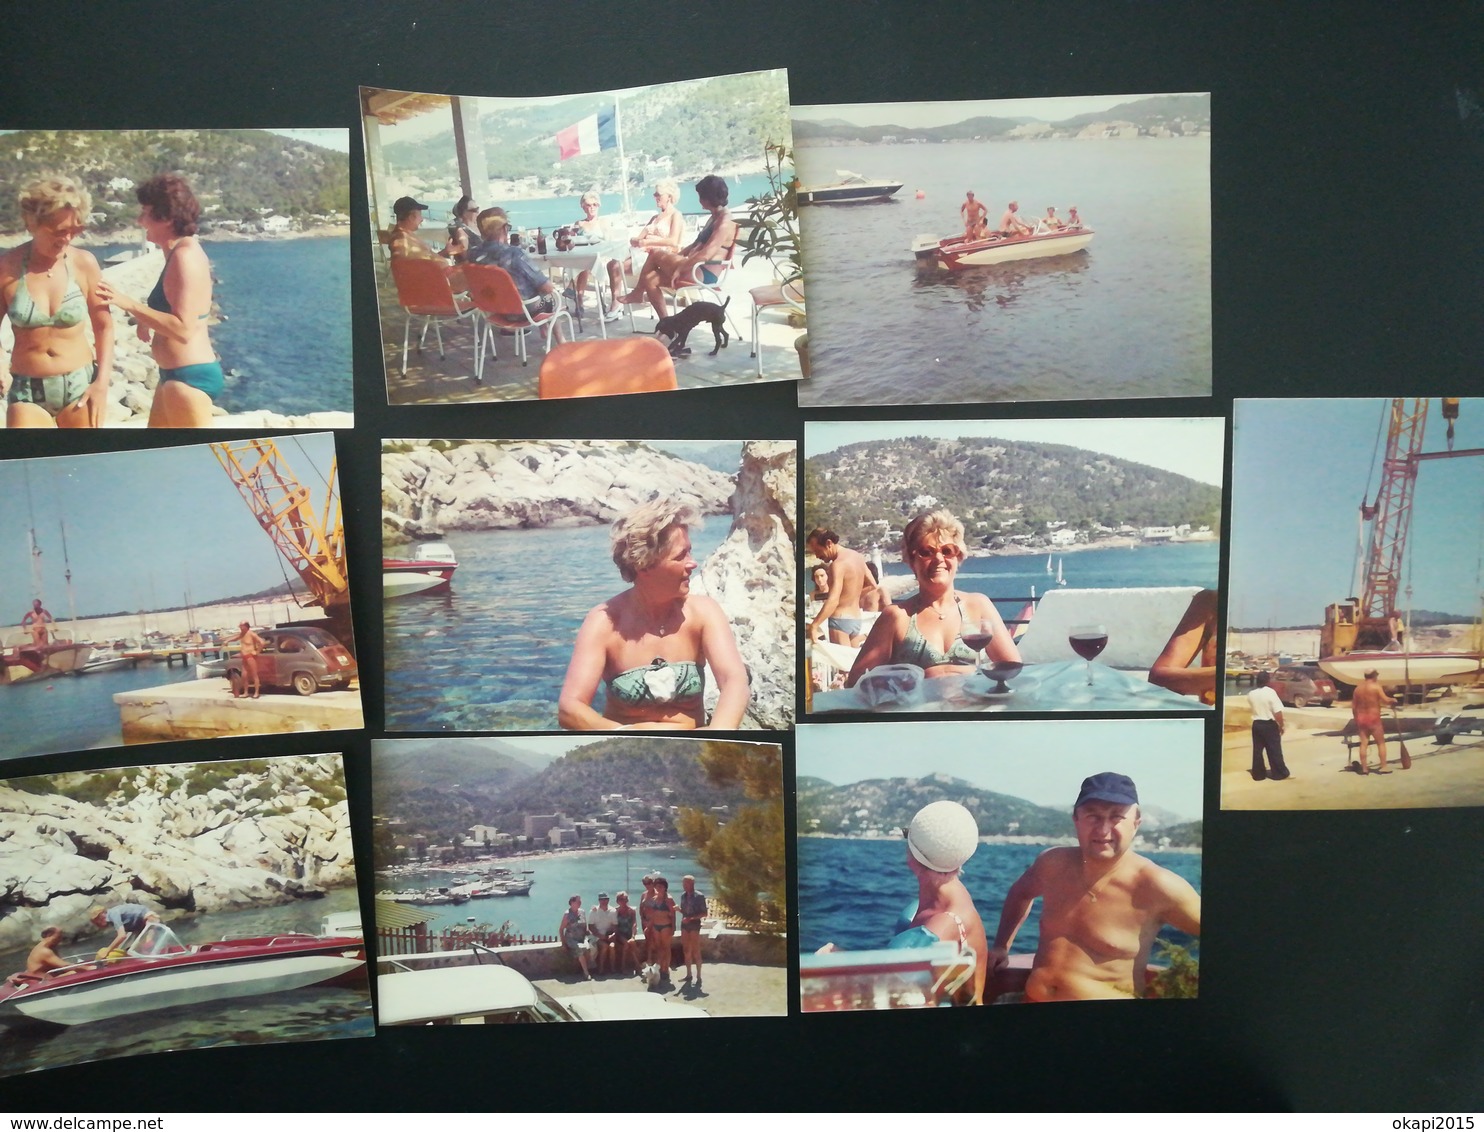 GROUPE DE VACANCIERS DE BELGIQUE À SANTA PONSA  MER ESPAGNE EN 1976 LOT 13 PHOTOS ORIGINALES EN COULEURS ANNÉE 1976